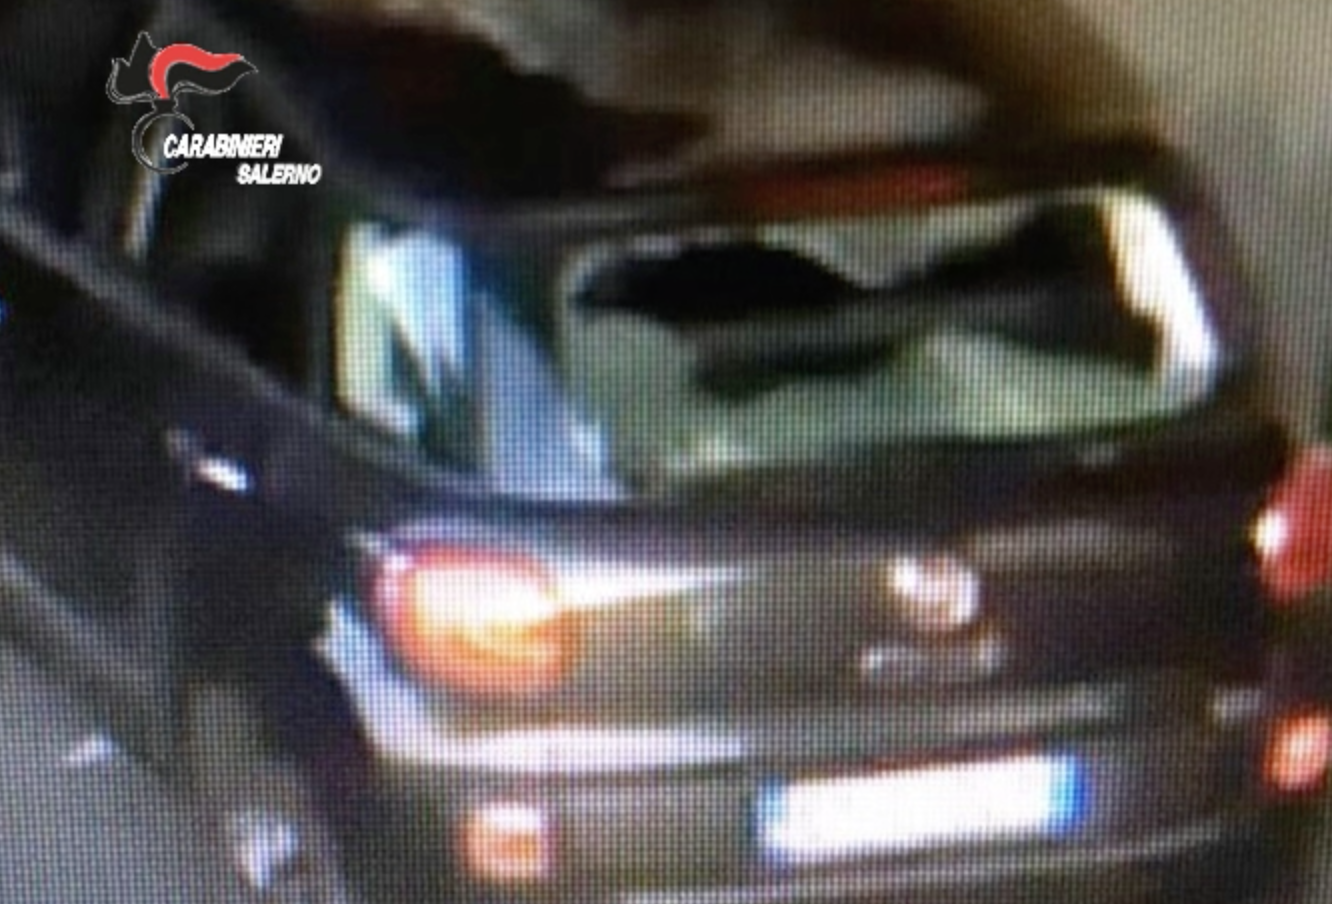 Baby gang nell’Agro nocerino  devastava auto in sosta: 8 ai domiciliari (VIDEO)